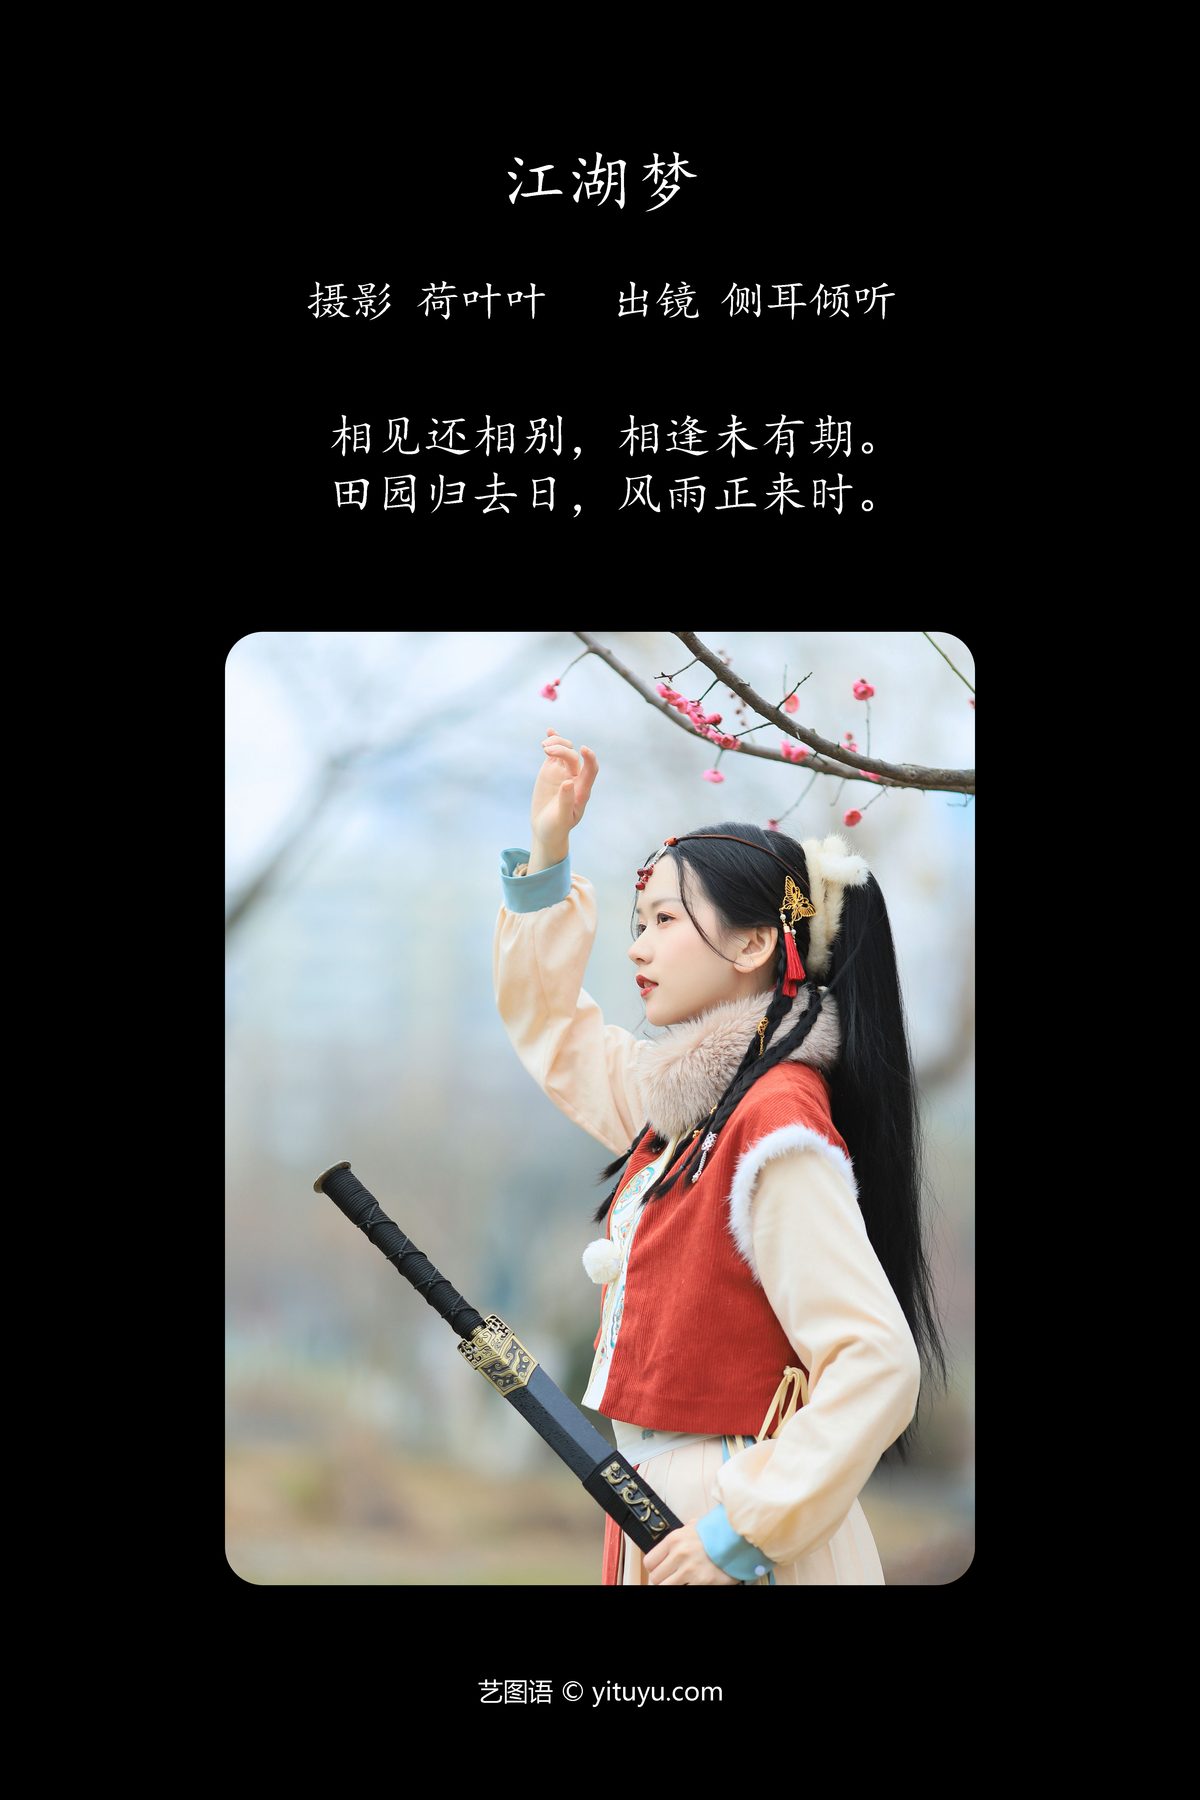 YiTuYu艺图语 Vol 5527 Ce Er Qing Xin Ting 0002 4880547333.jpg